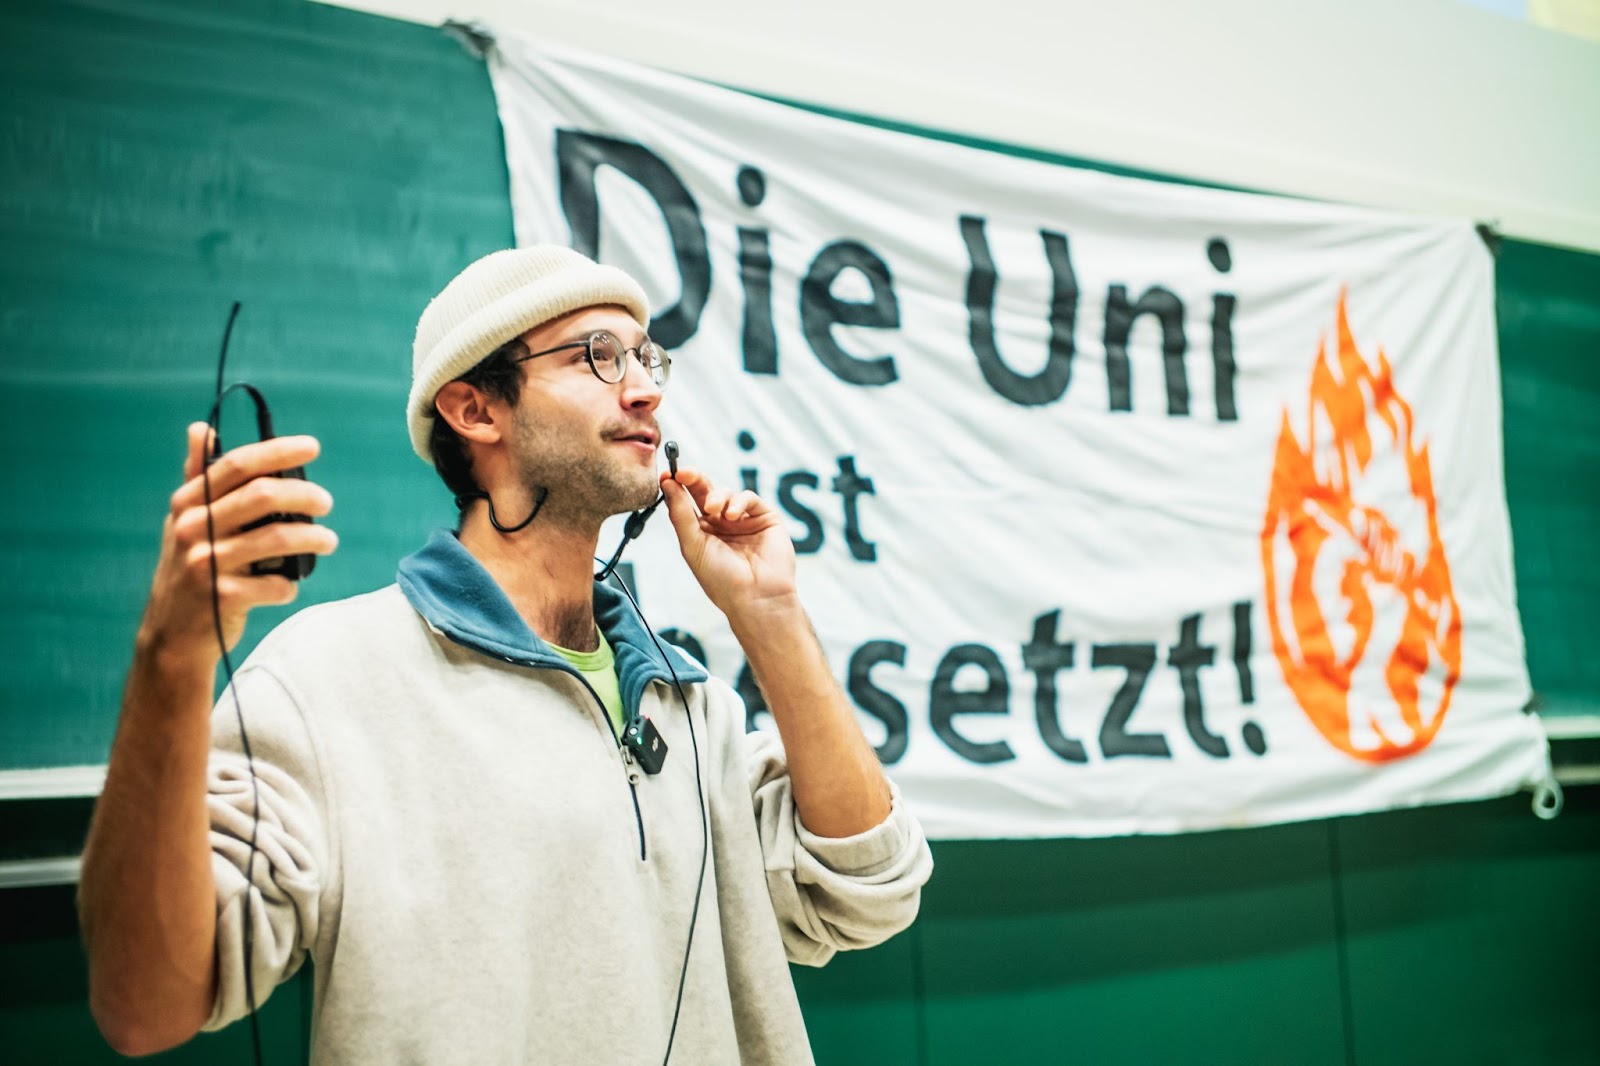 Ein Aktivist der Bewegung "Erde Brennt" in Wien spricht in ein Mikrofon. Im Hintergrund sieht man ein Plakat. In schwarzer Schrift steht auf weißem Hintergrund: "Die Uni ist besetzt!" Daneben das Logo von "Erde brennt": eine Flamme und darin eine zur Faust geballte Hand. Das Plakat hängt vor einer grünen Schultafel.